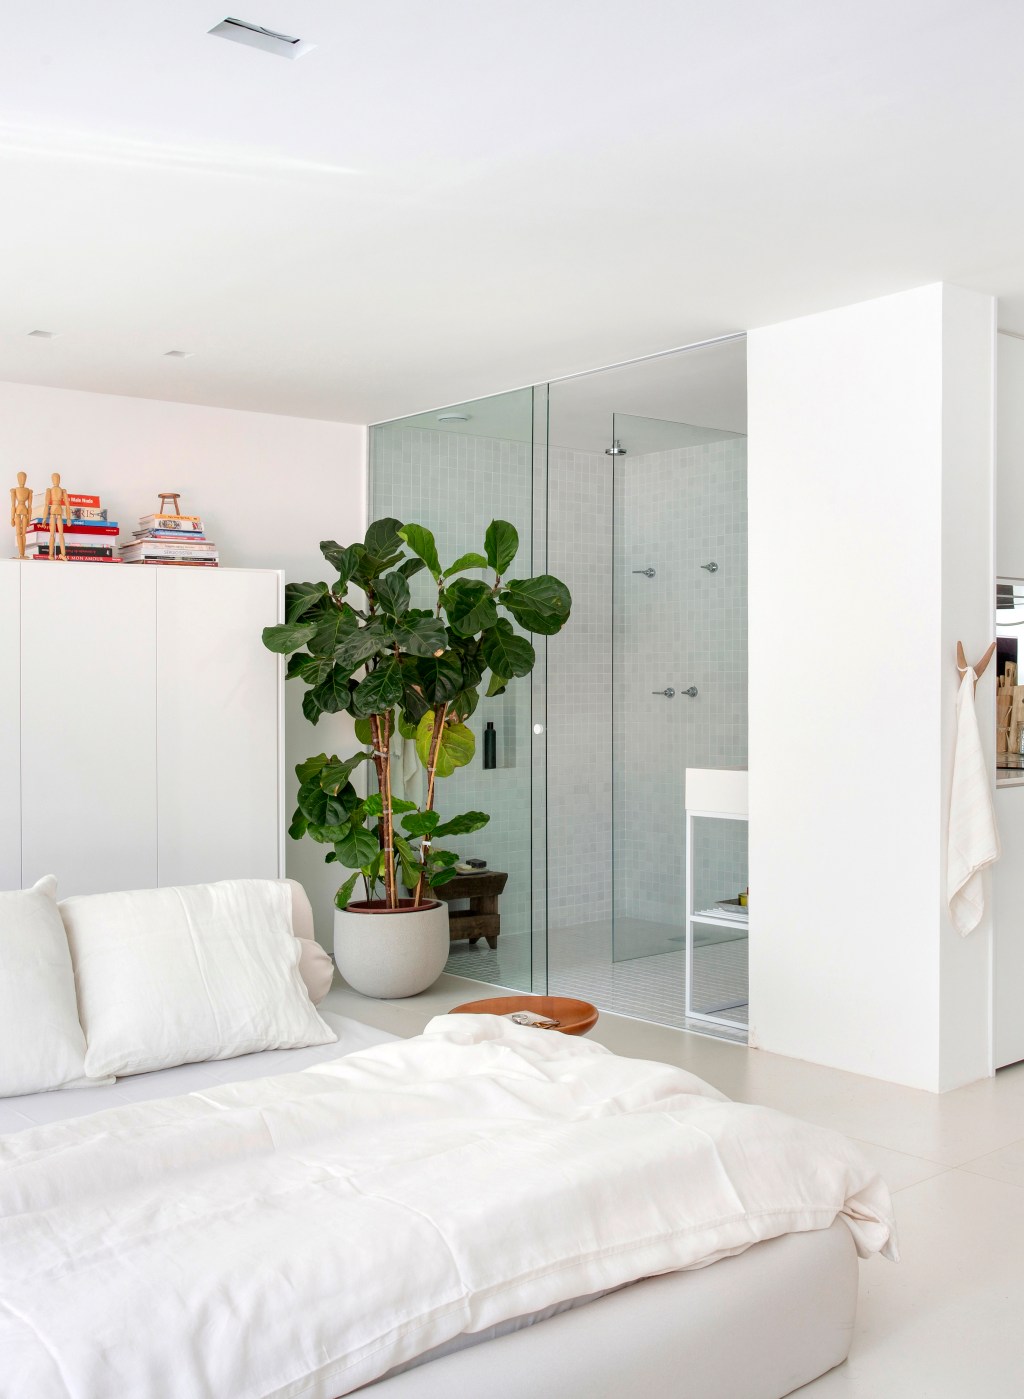 Loft de 40 m² ganha projeto minimalista que une branco e madeira. Projeto de Diego Raposo e Manuela Simas. Na foto quarto com banheiro integrado. Vaso de plantas e cama.